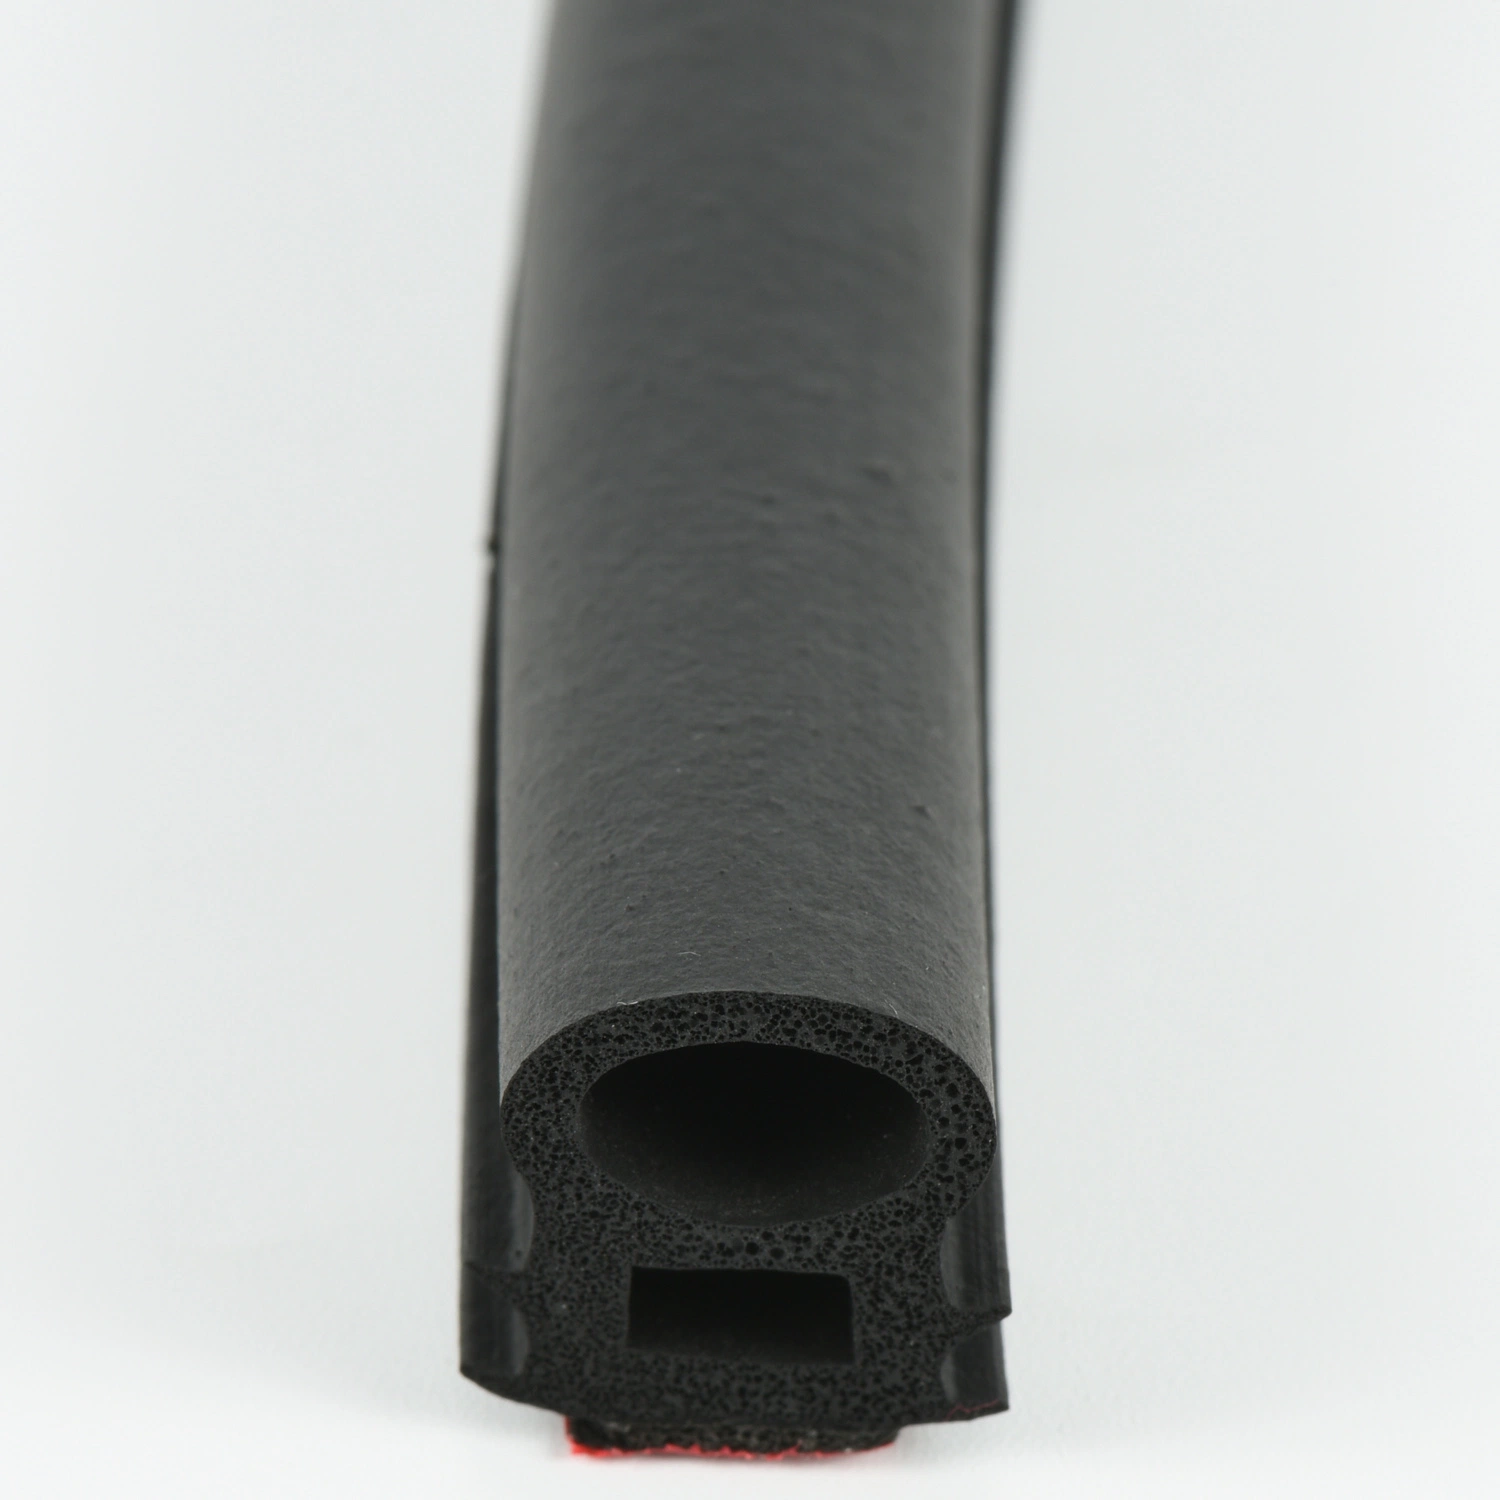 Piezas de repuesto para automóvil extrusión tira de sellado de cable de caucho EPDM personalizada Para puerta de ventana de coche